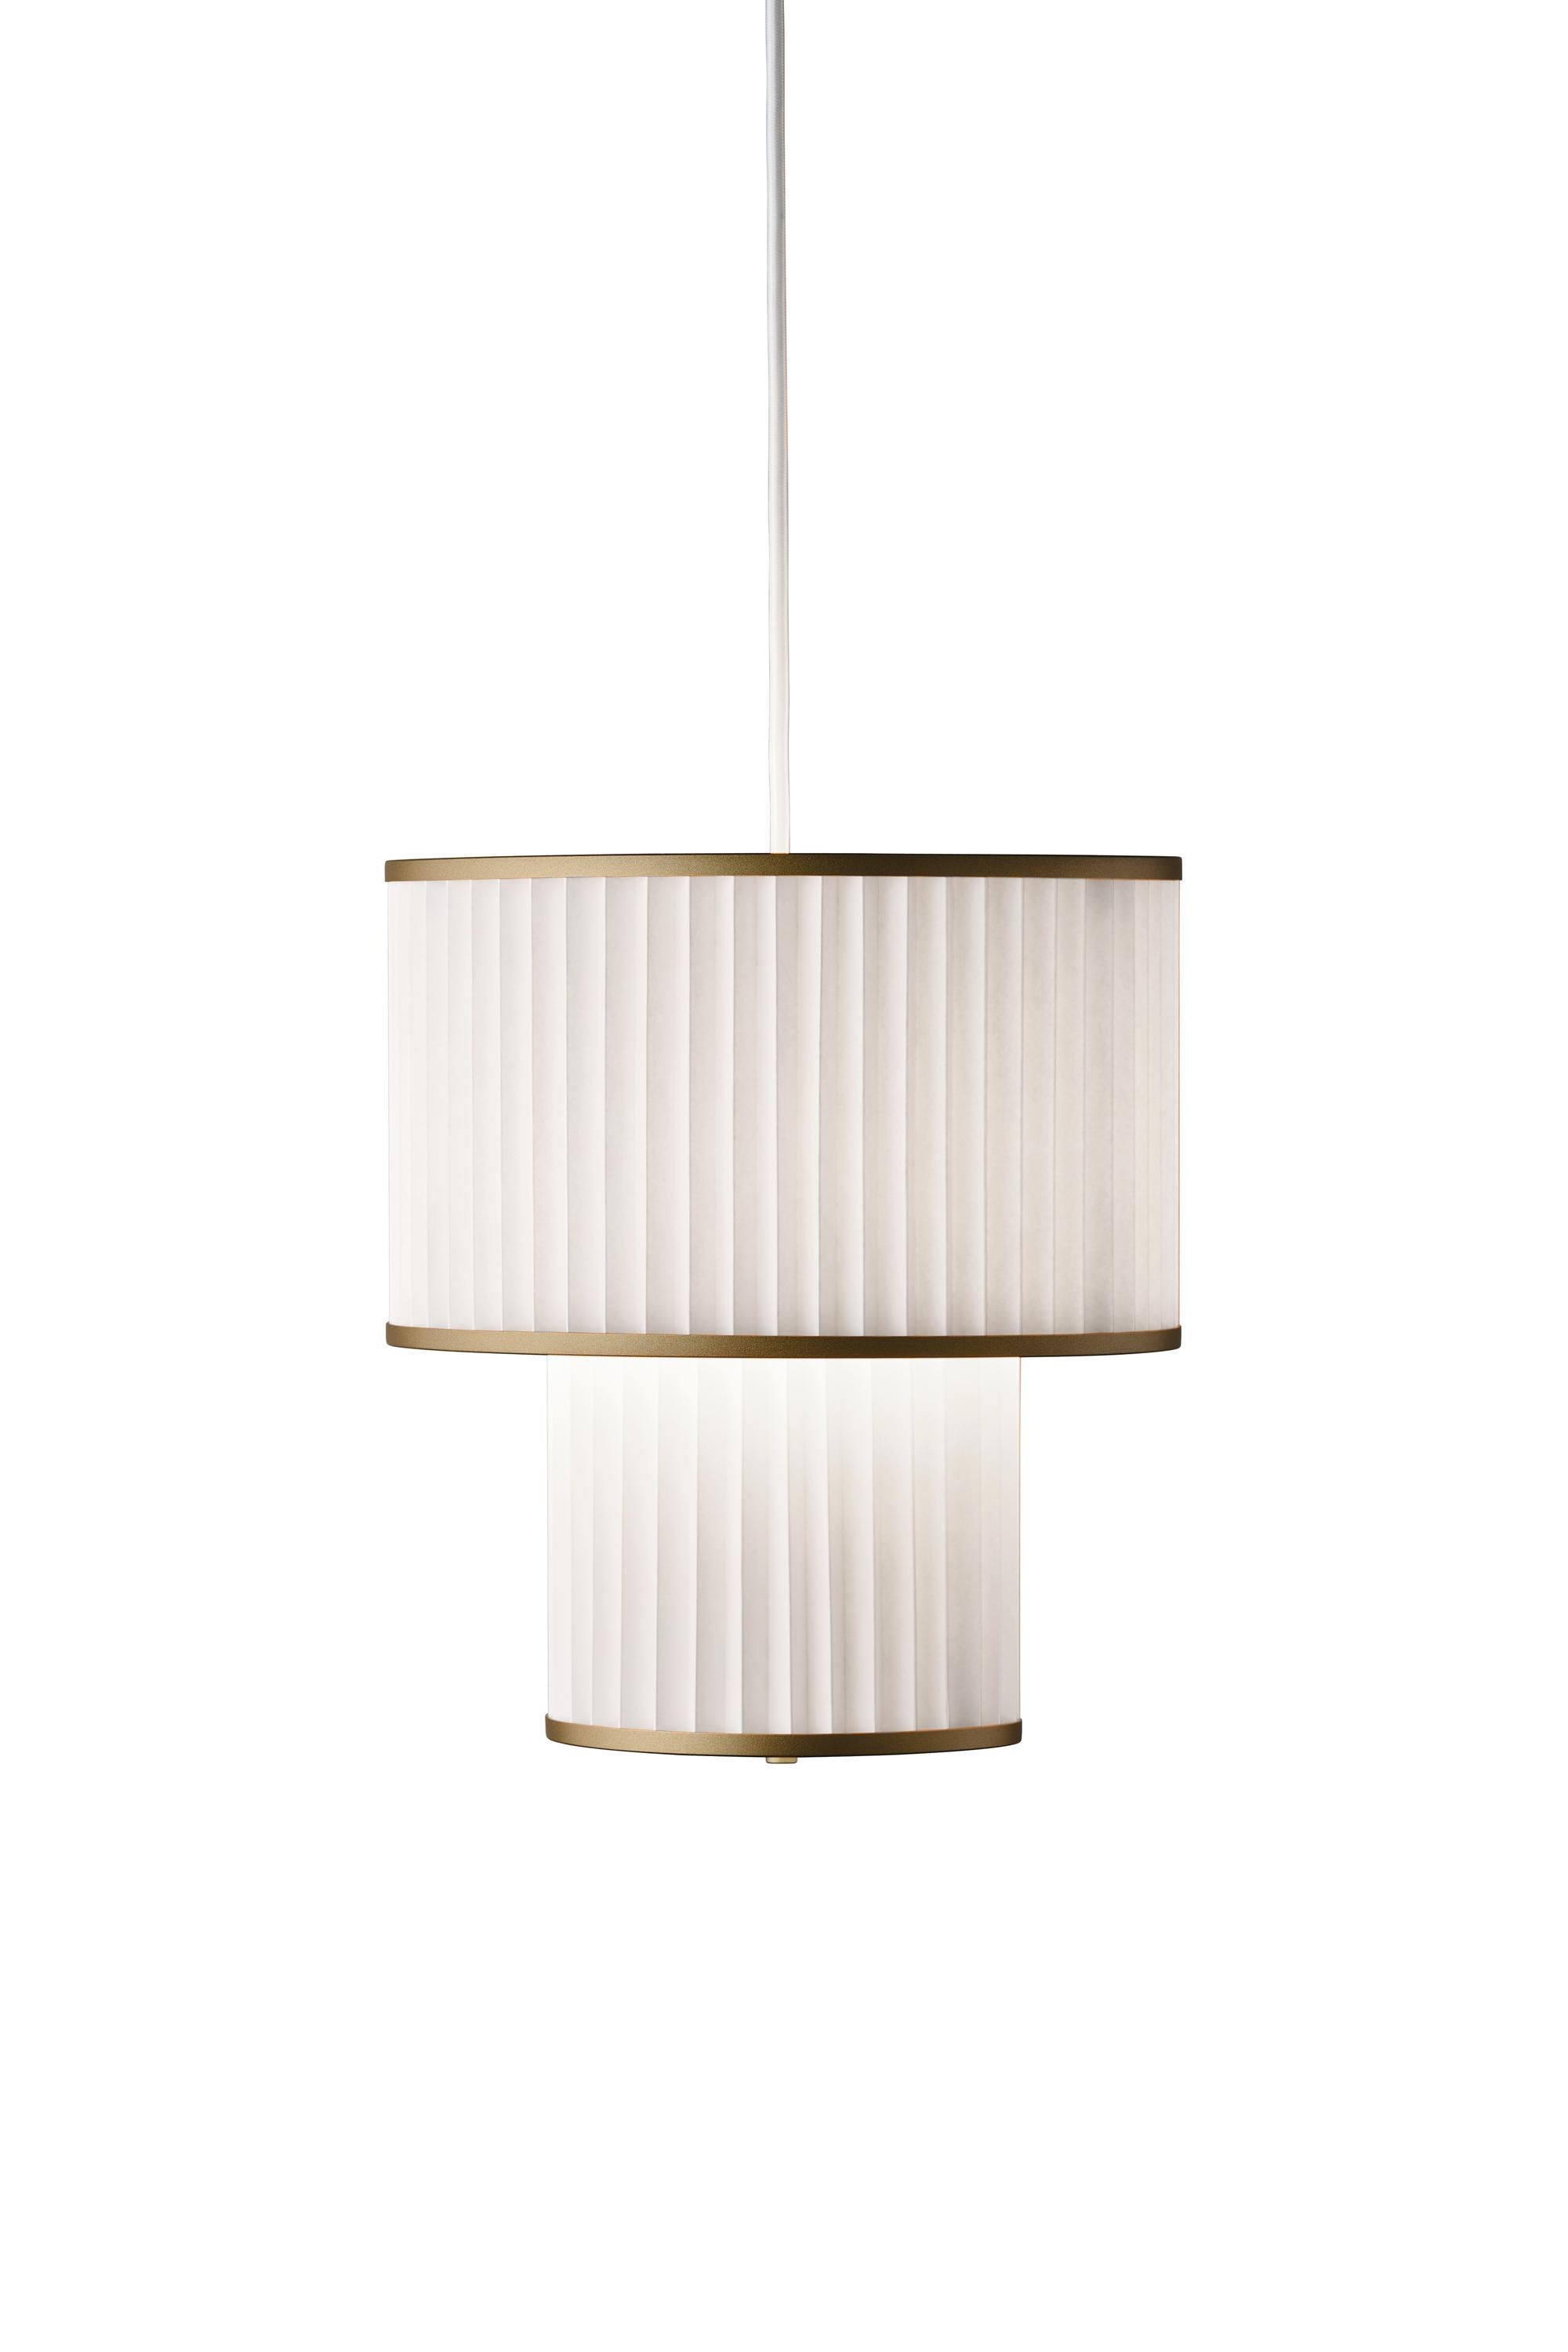 Le Klint PLIVELLO Lampe à suspension dorée / blanc avec 2 nuances (S M)